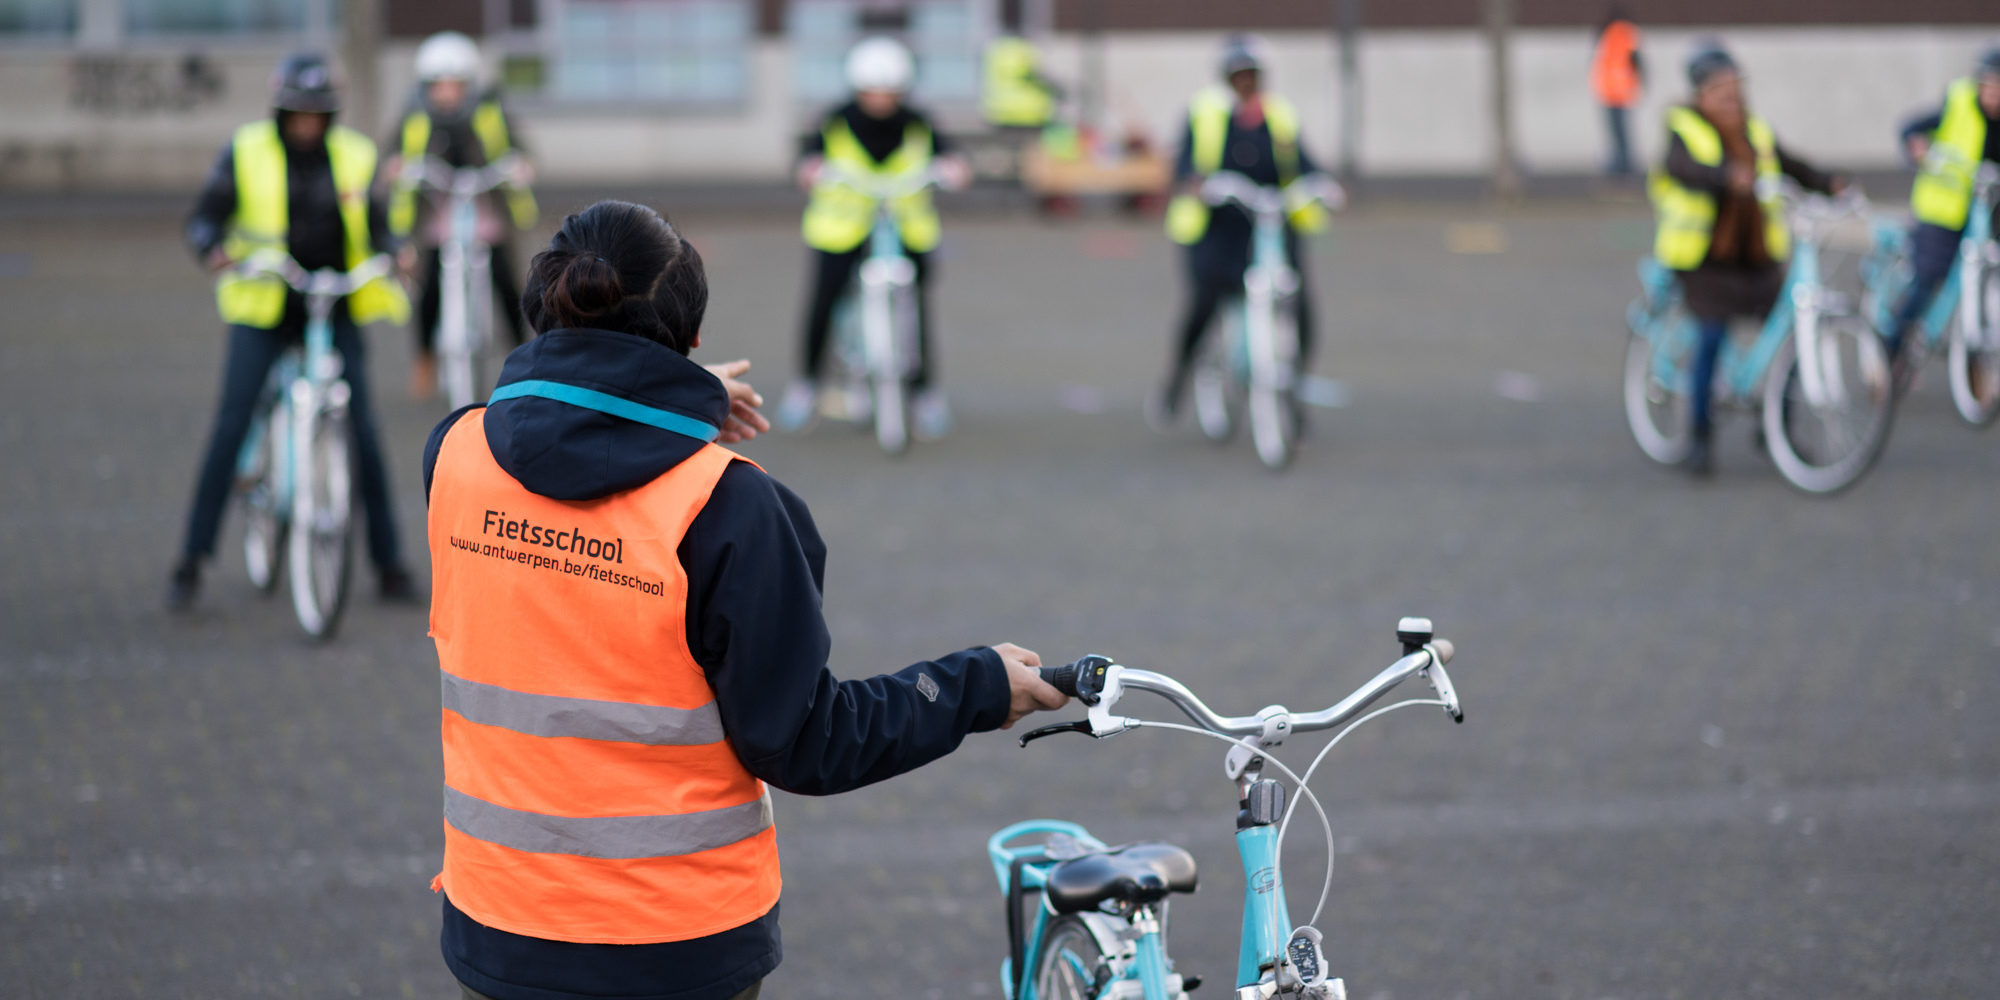 Reageer Wetenschap stimuleren Leer fietsen dankzij de Fietsschool | Antwerpen.be